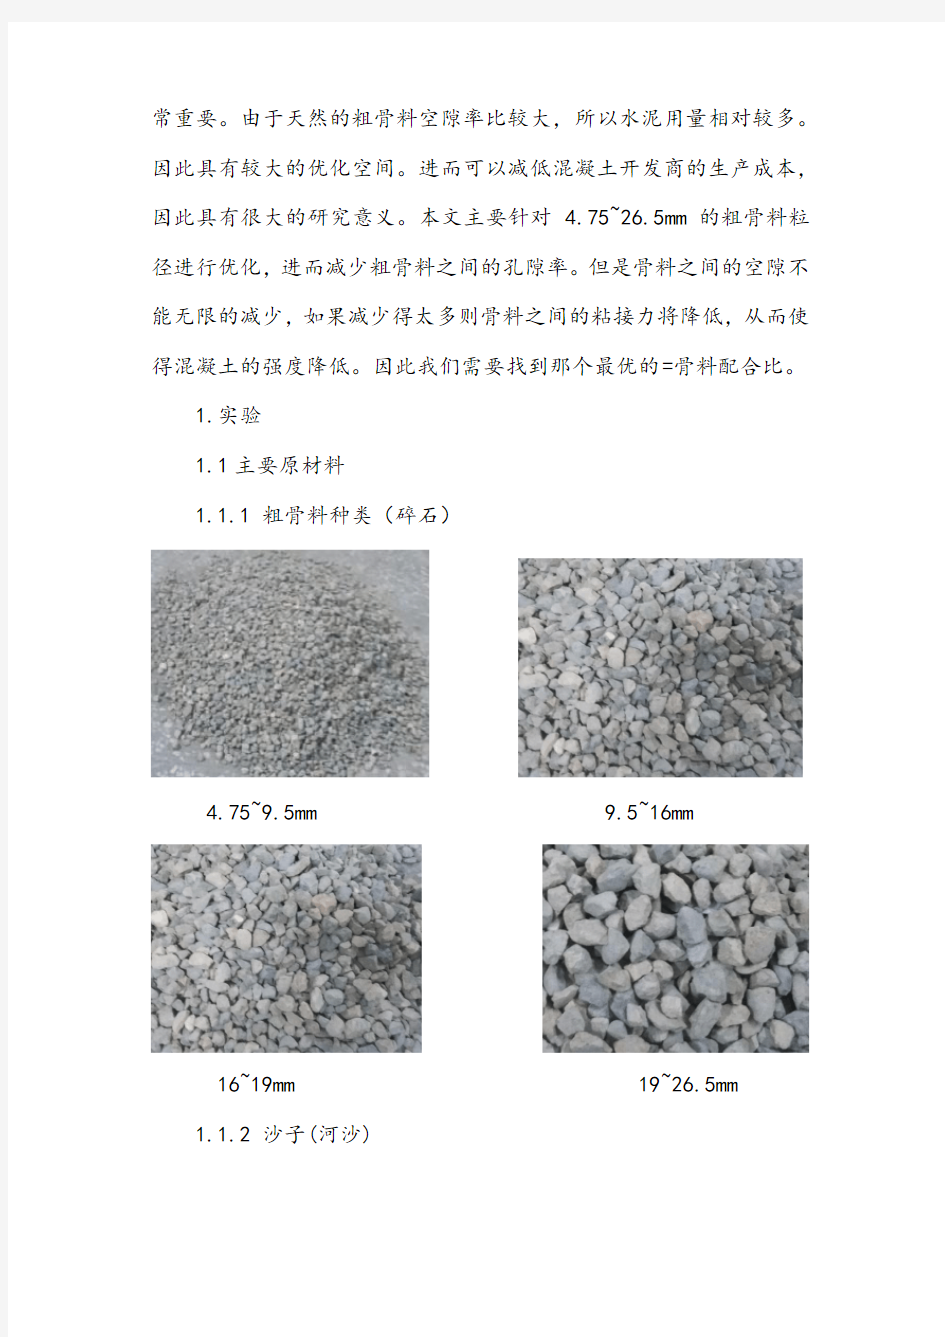 骨料级配优化对混凝土胶凝材料用量的影响